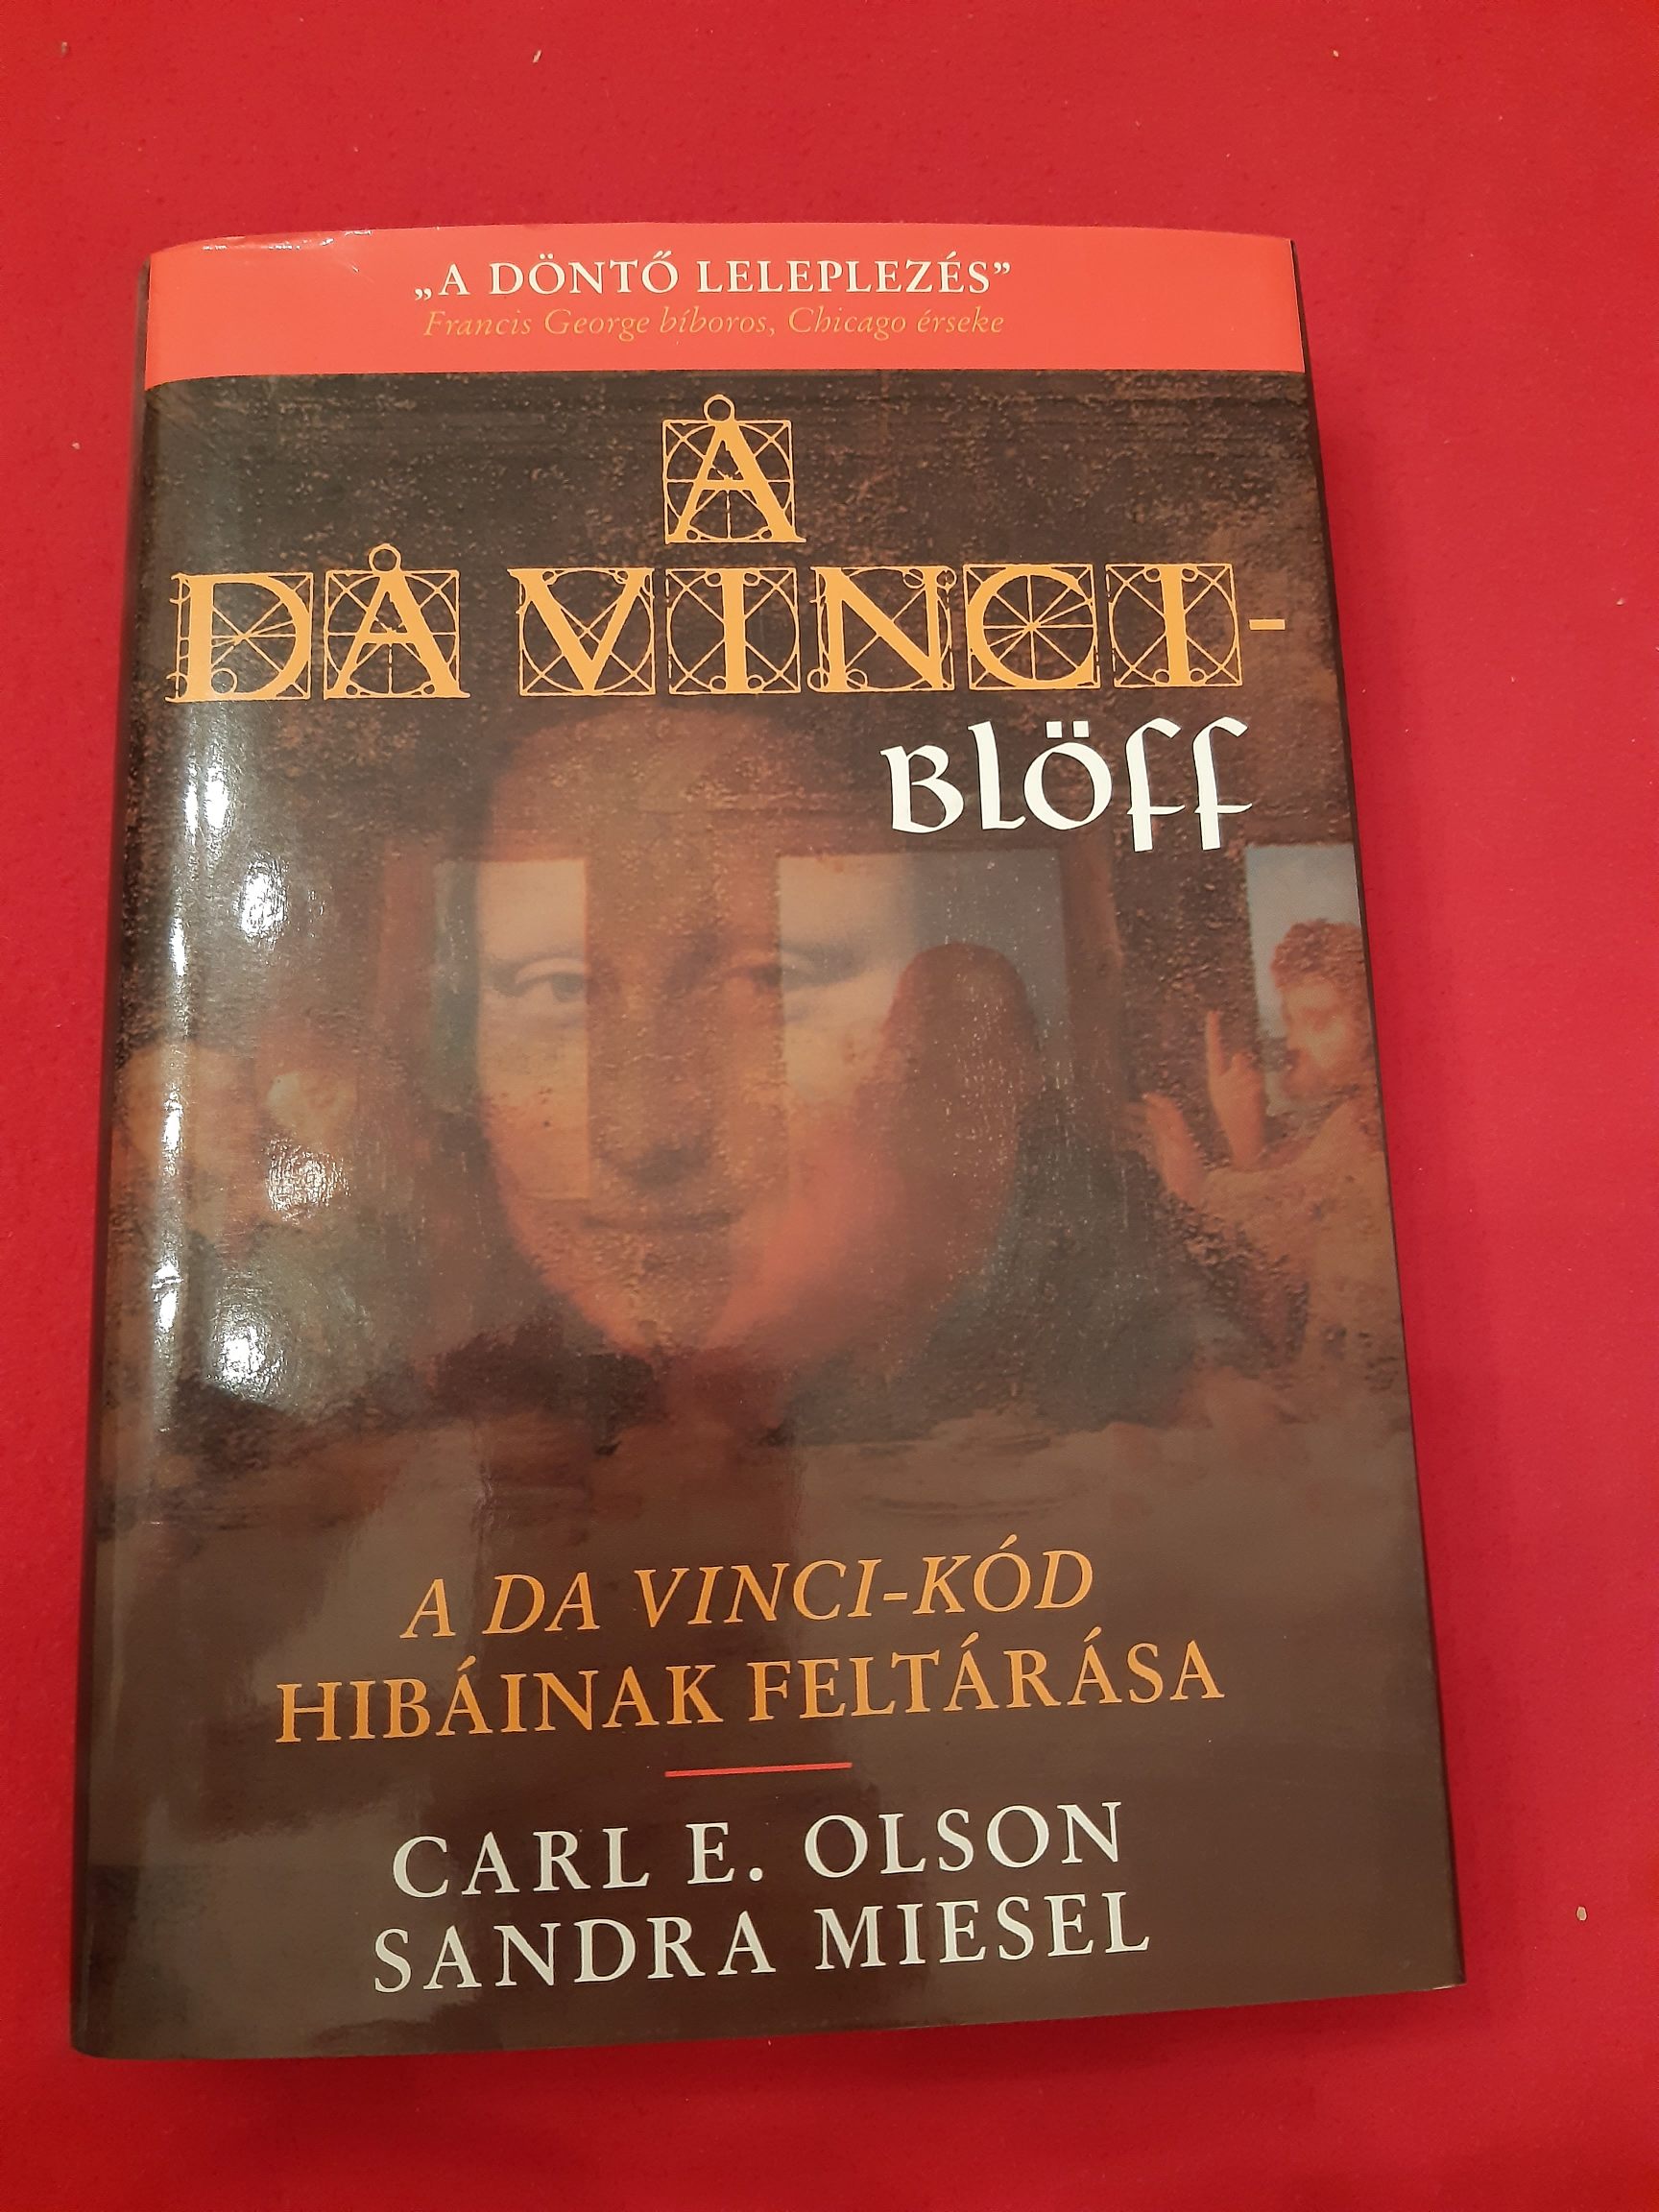 A Da Vinci blöff